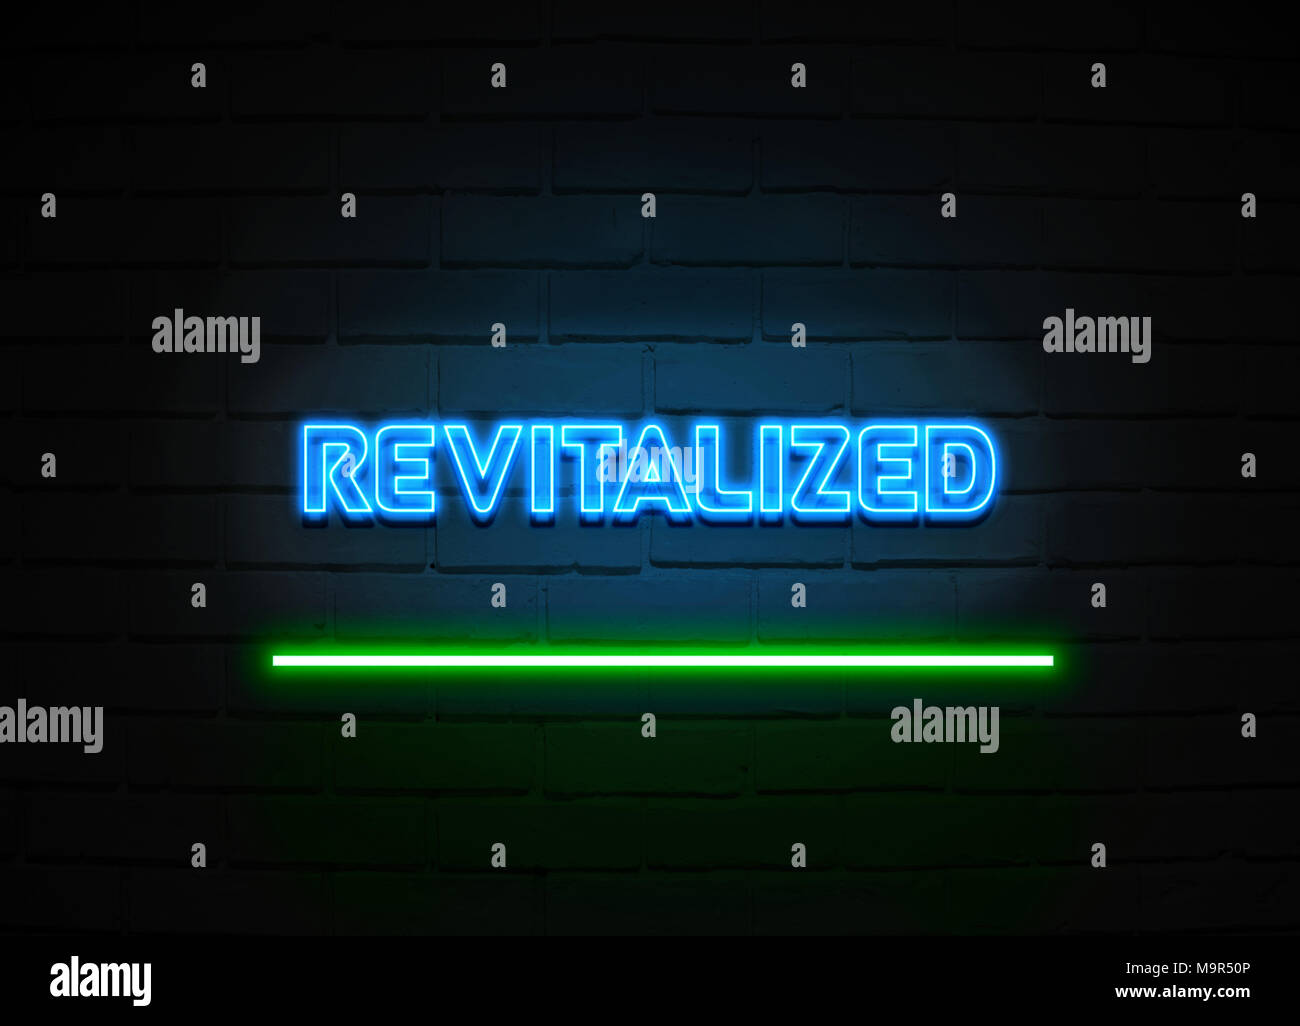 Revitalisierte Leuchtreklame - glühende Leuchtreklame auf brickwall Wand - 3D-Royalty Free Stock Illustration dargestellt. Stockfoto